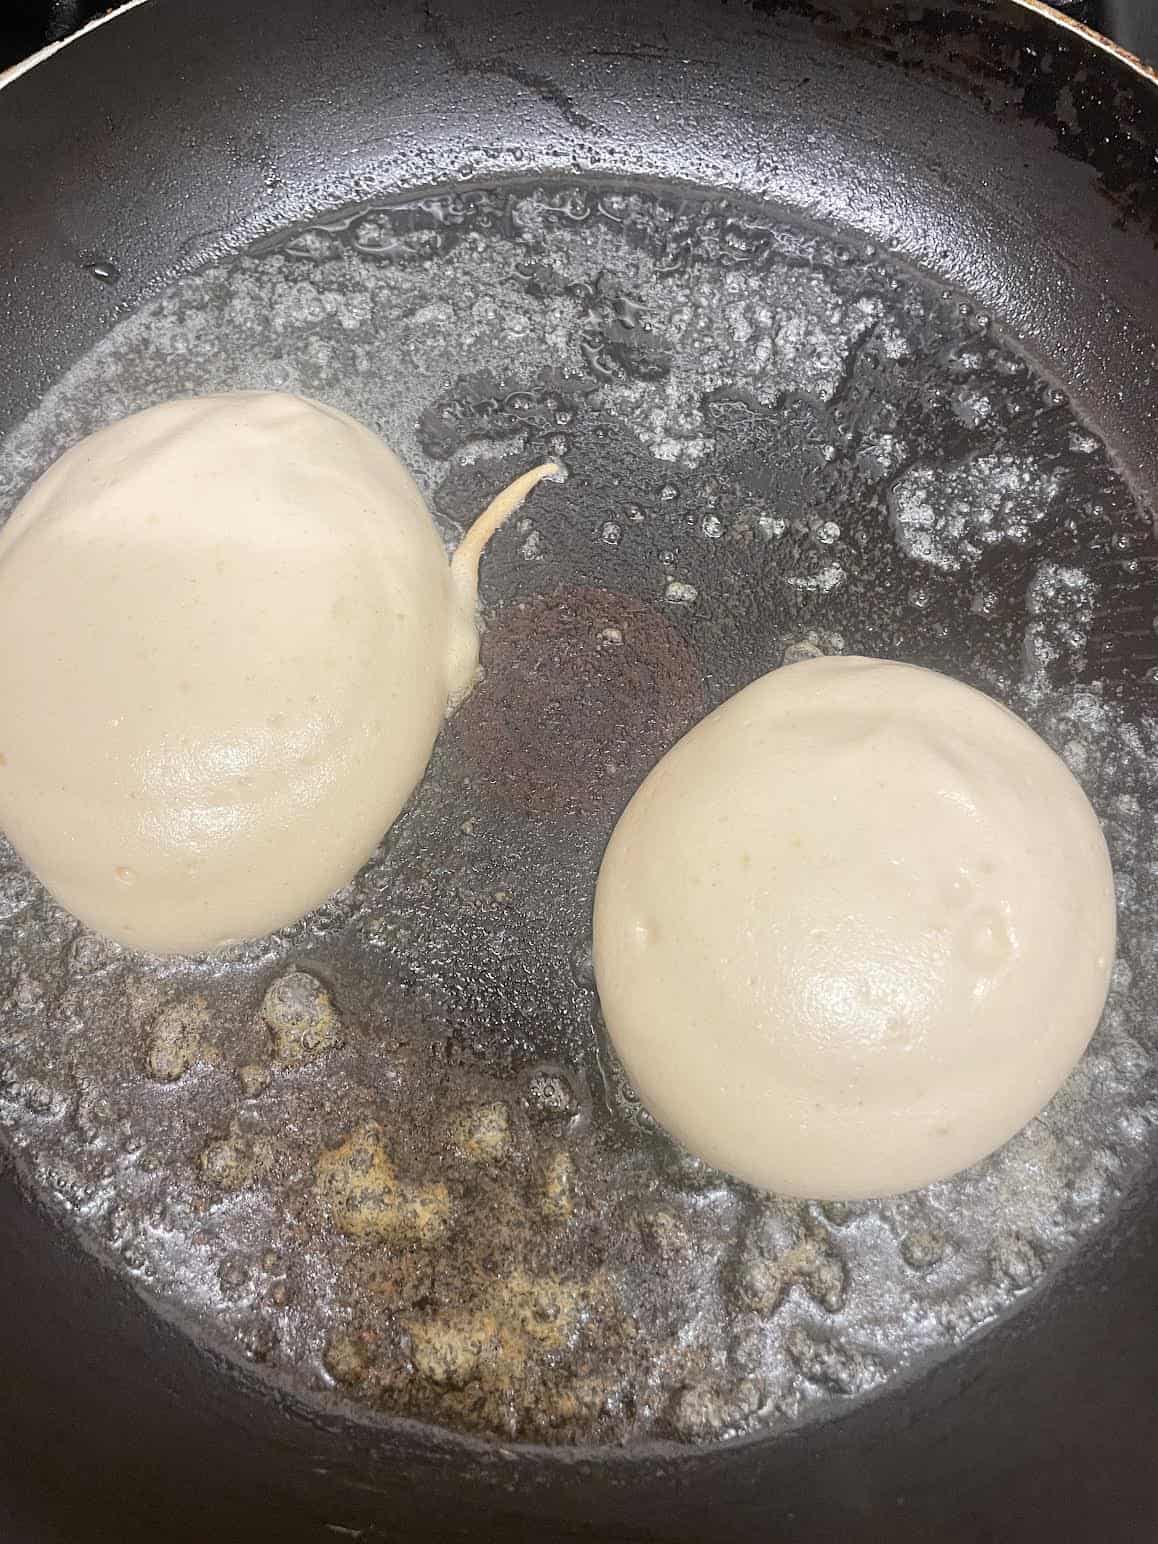 Pancakes in pan